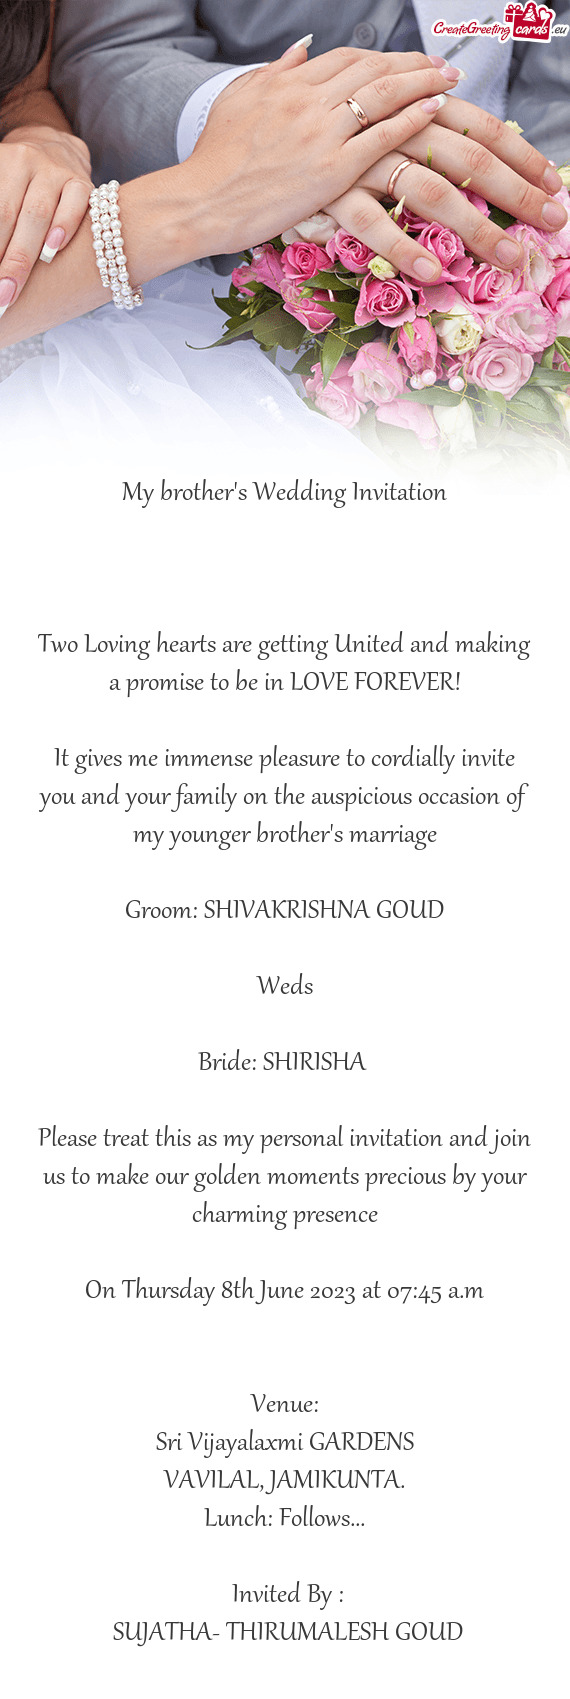 Bride: SHIRISHA